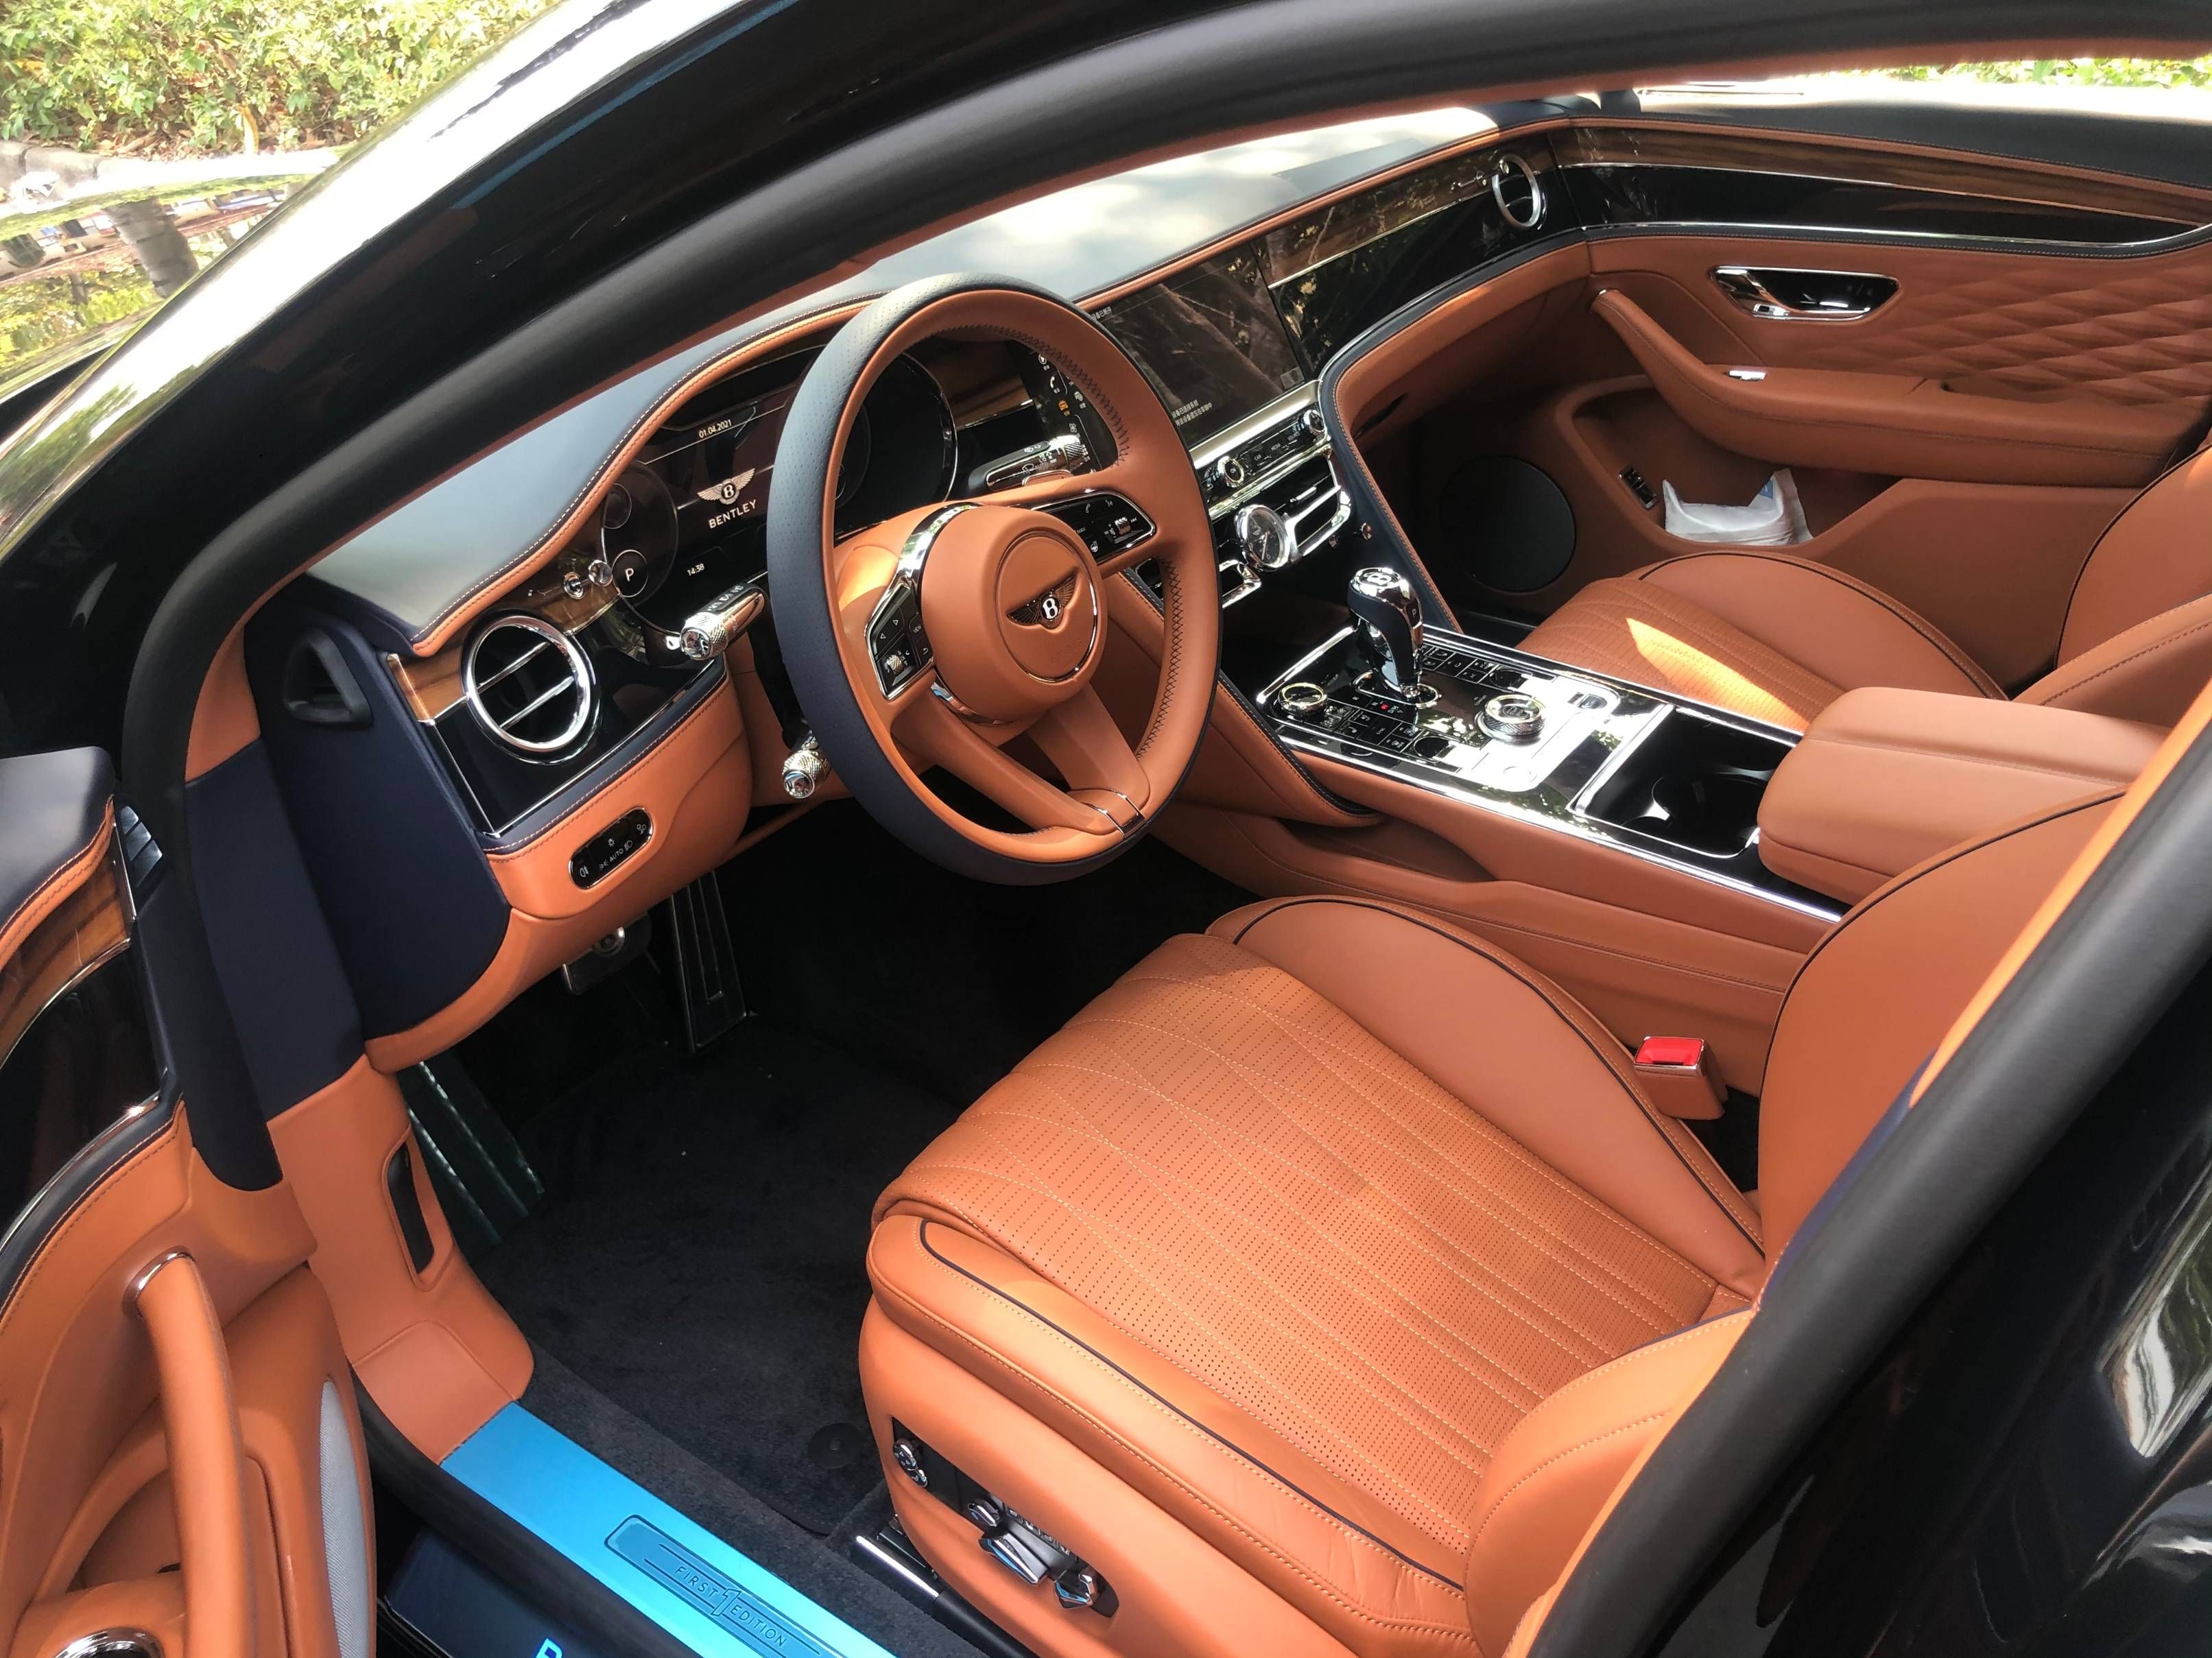 二手宾利欧陆GT 2018款6.0T百年纪念款报价|图片|出售|多少钱|哪里有卖的316.70万元-超跑之家